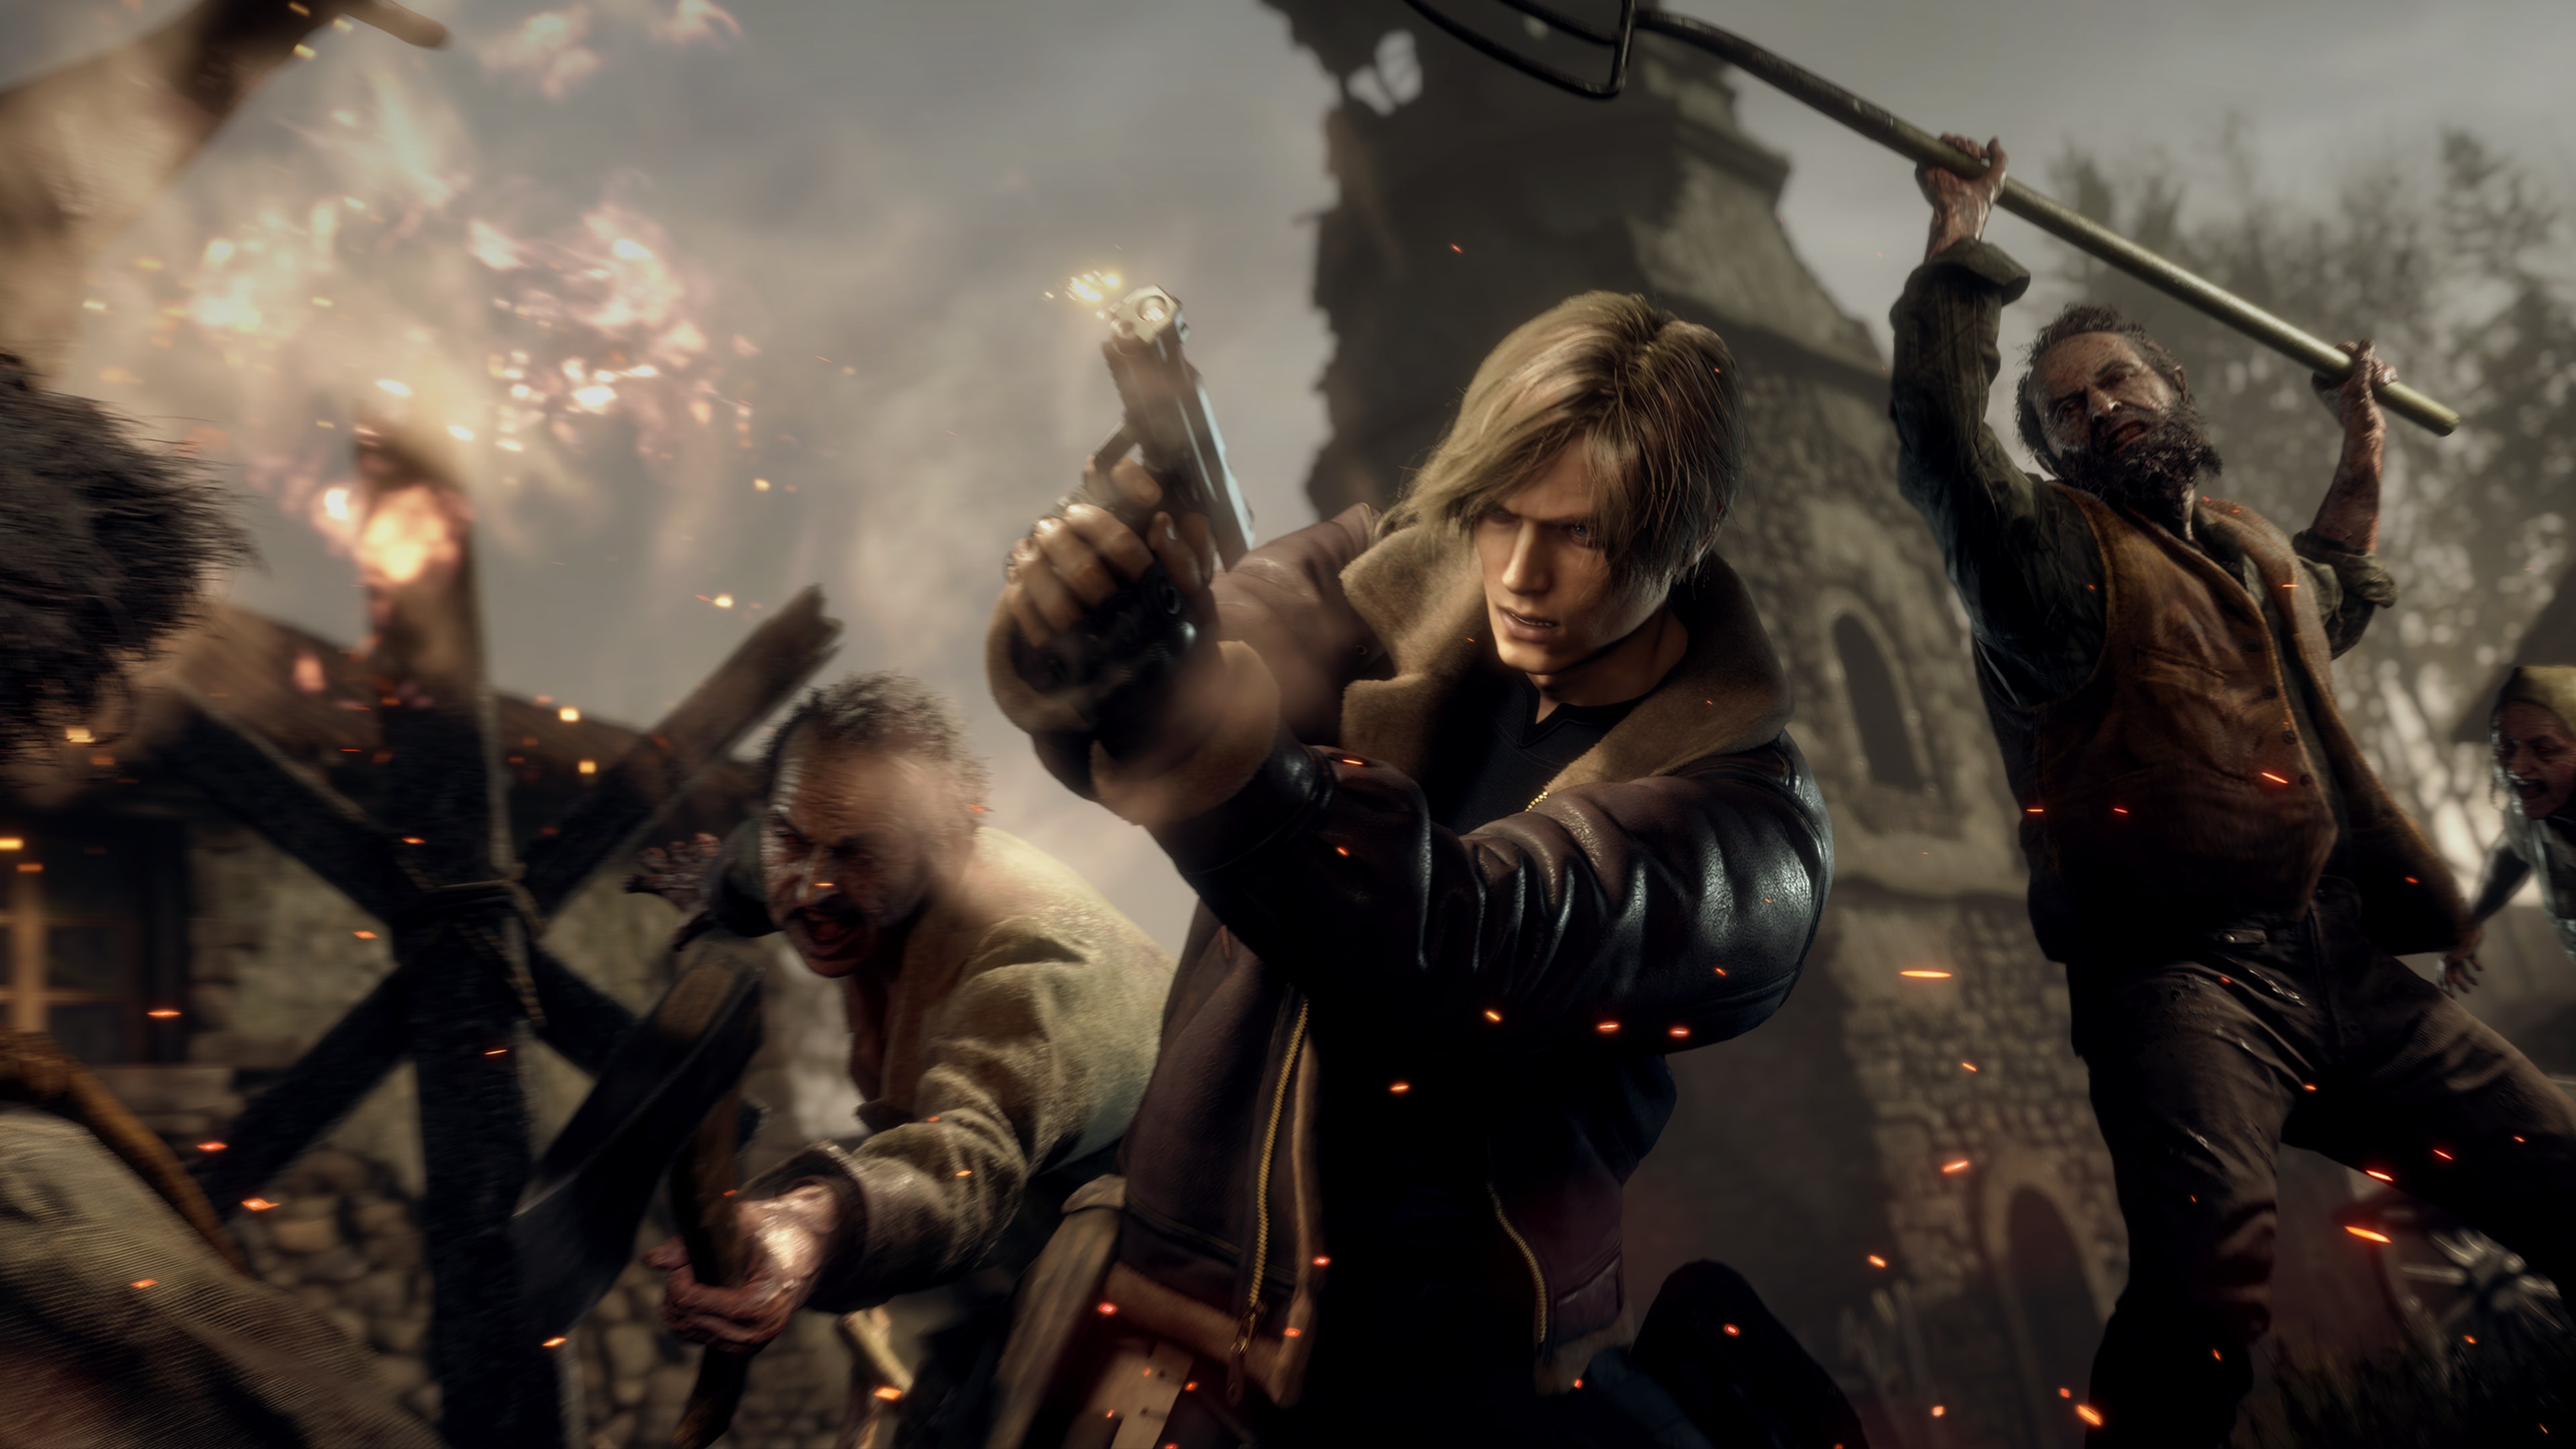 Resident Evil 4 - The Mercenaries (English/Chinese/Korean/Japanese Ver.)